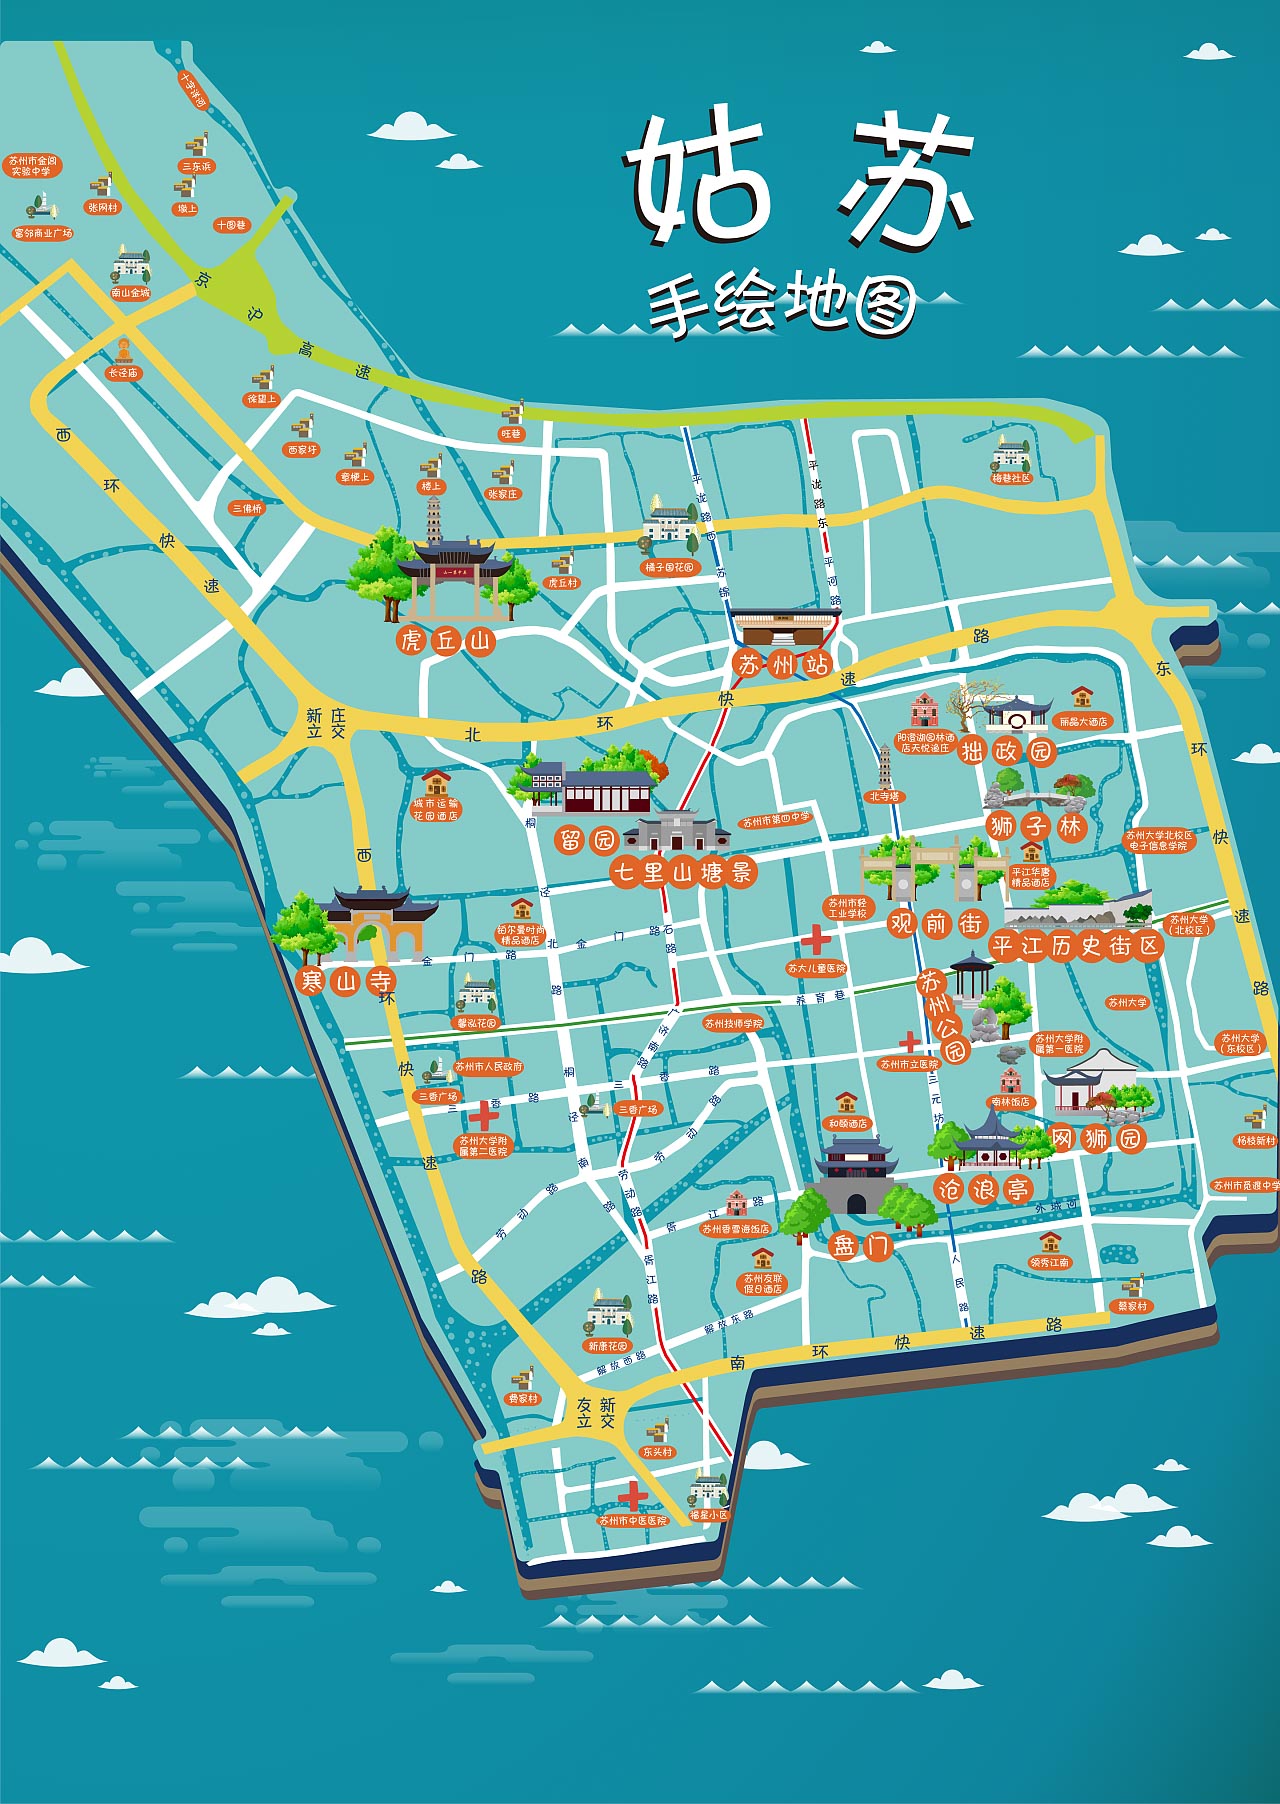 光坡镇手绘地图景区的文化宝藏